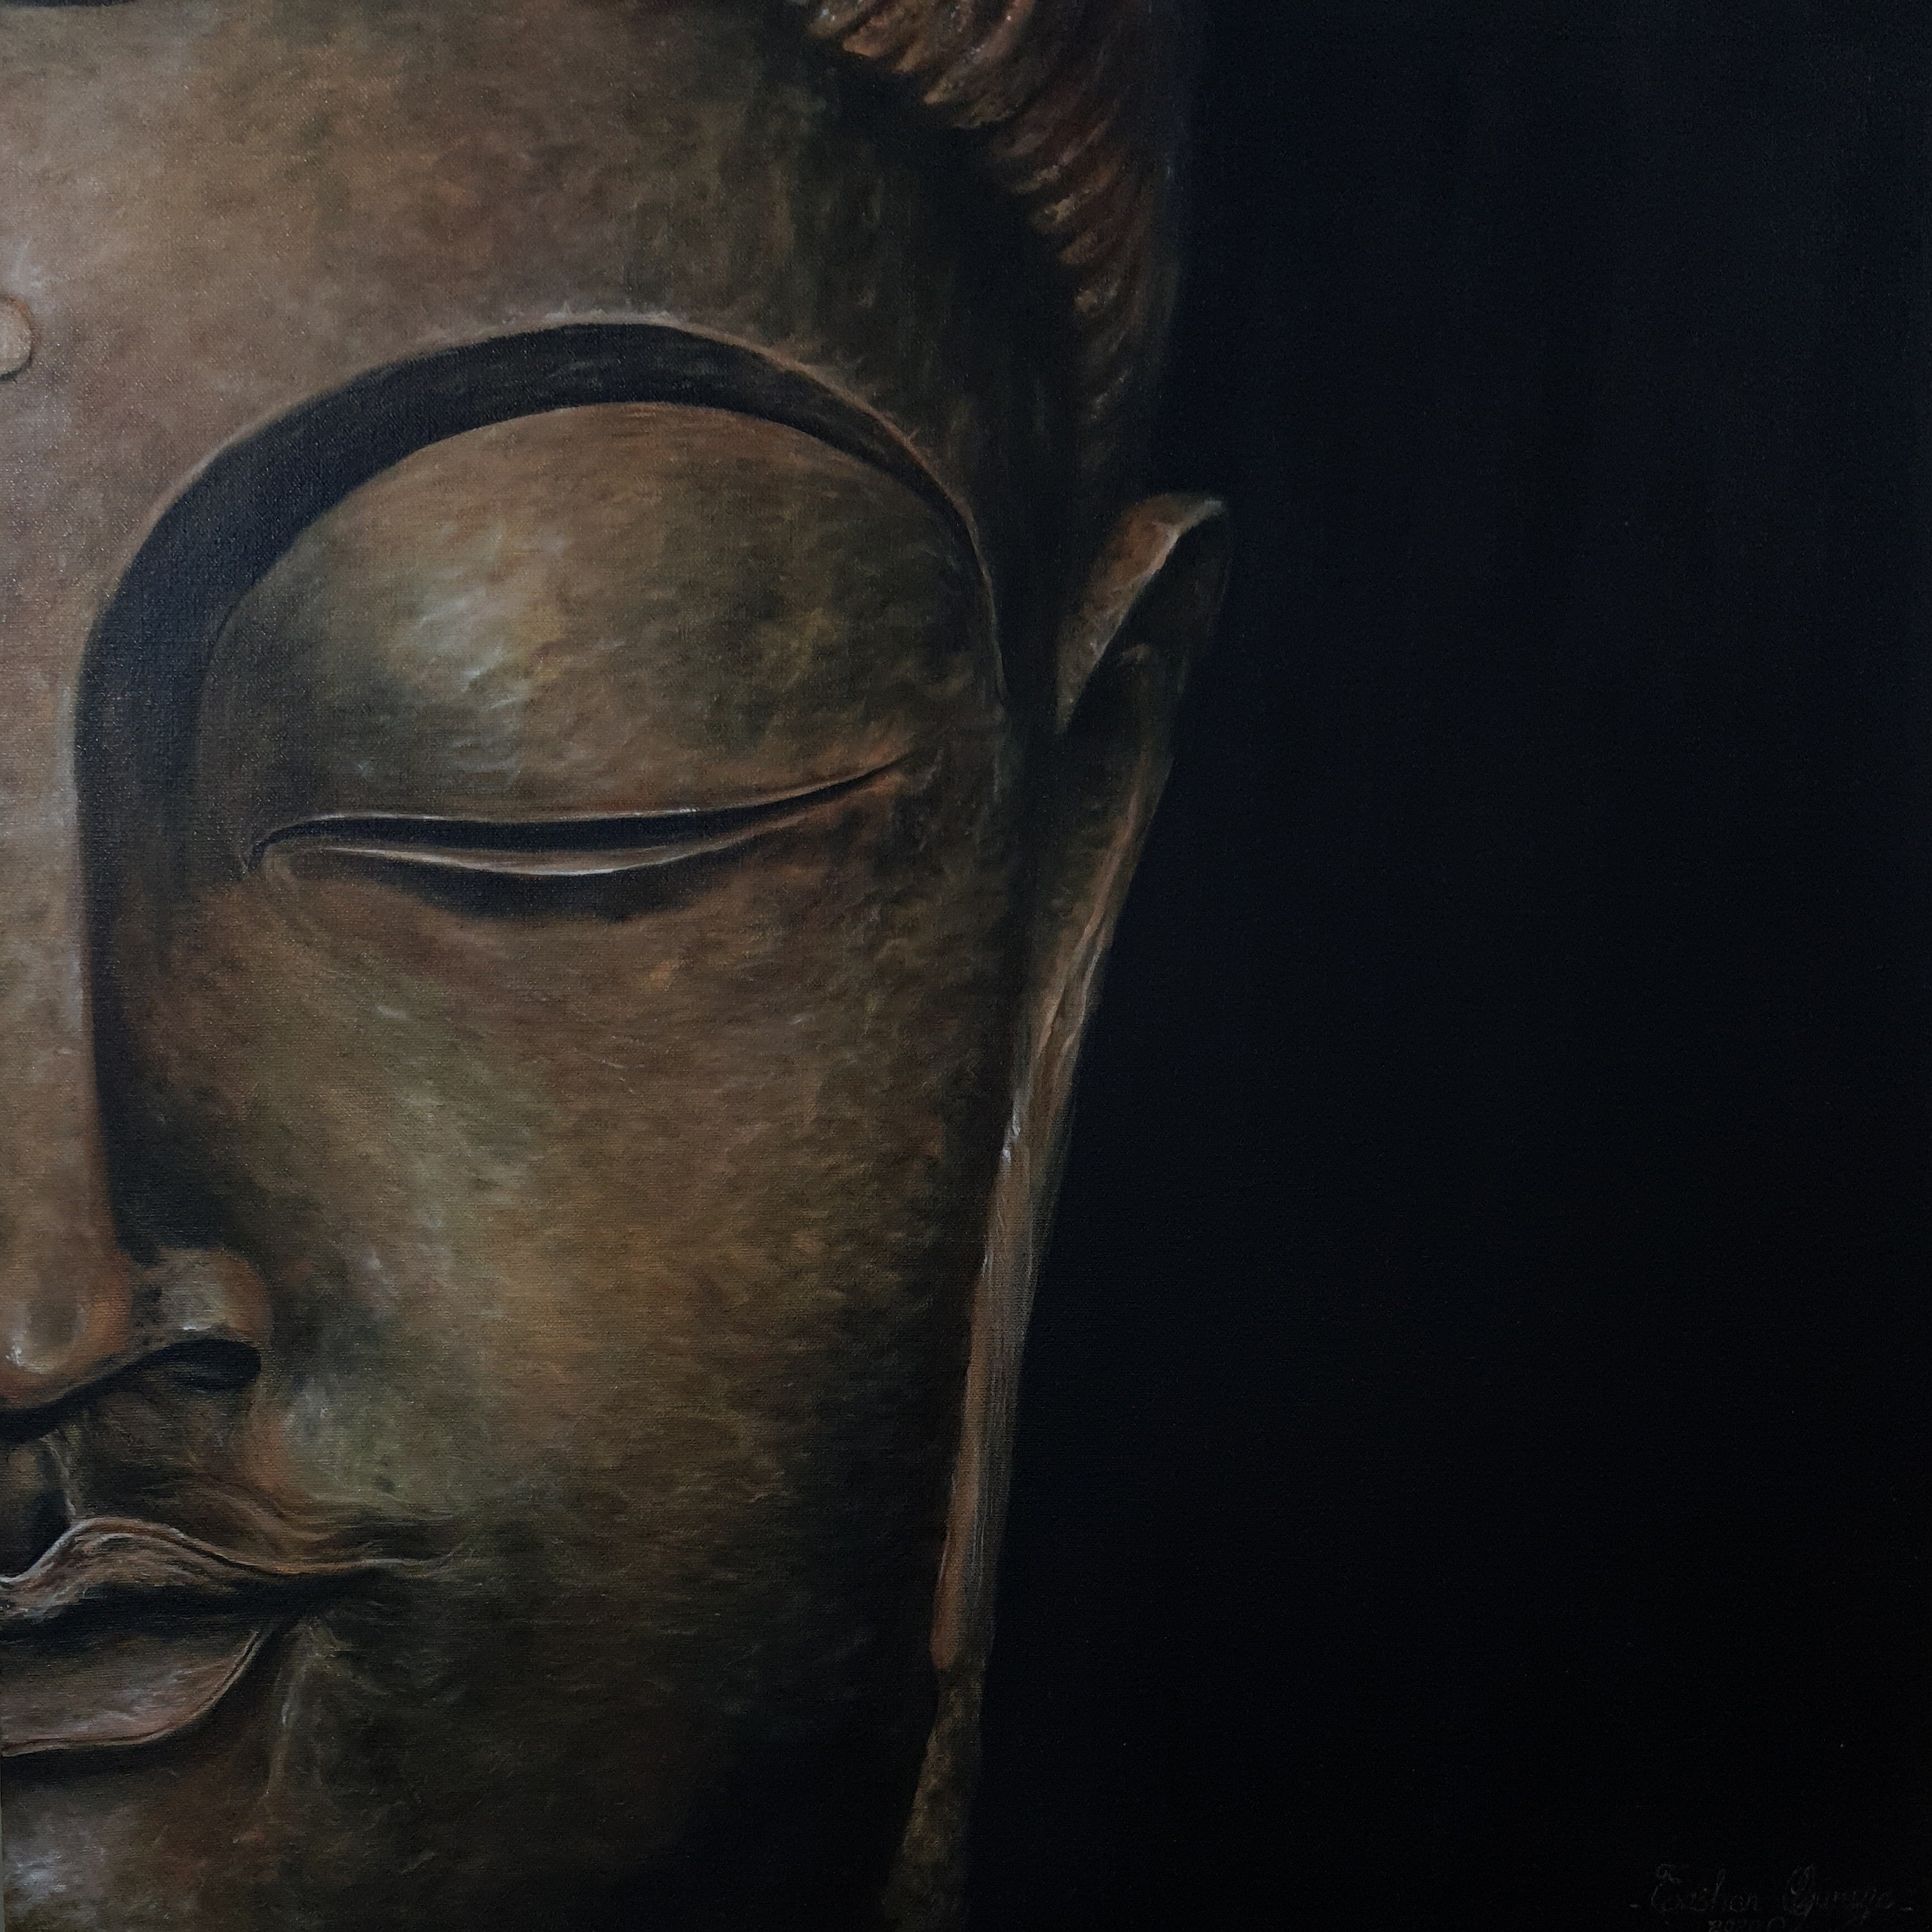 Load buddha by Eashan Guruge